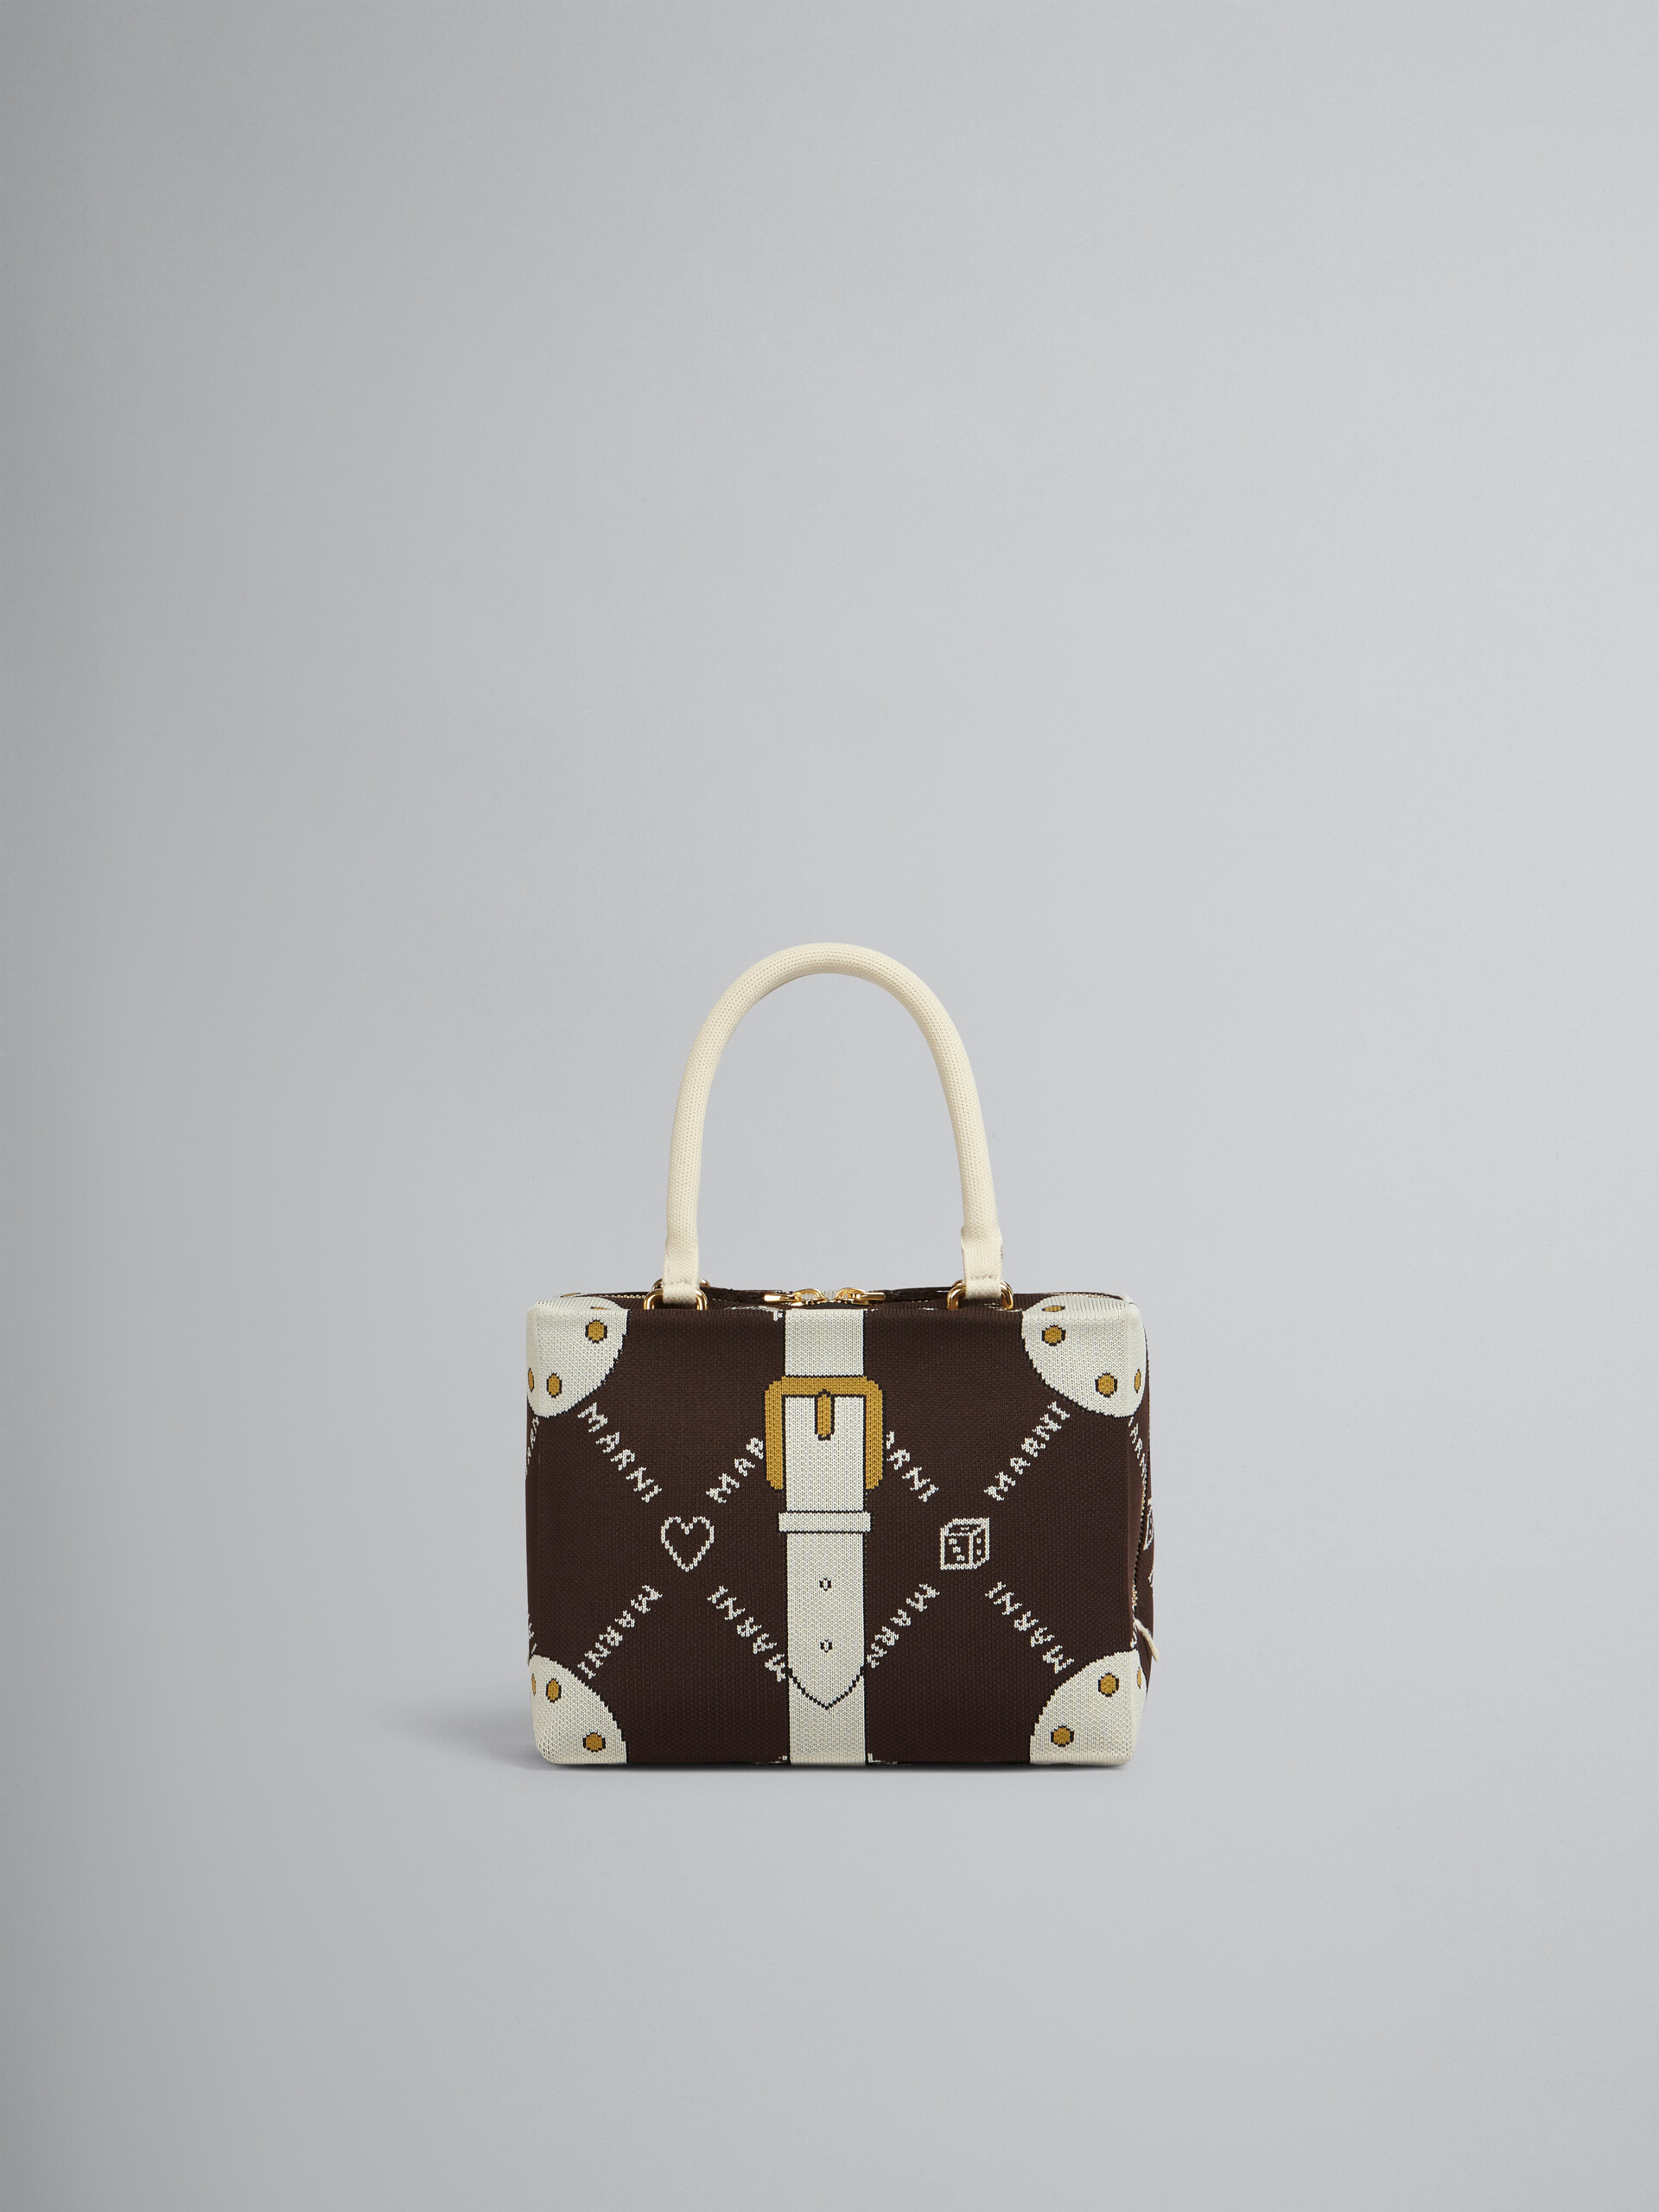 CUBIC bag in brown Marnigram trompe-l'œil jacquard - Handbag - Image 1